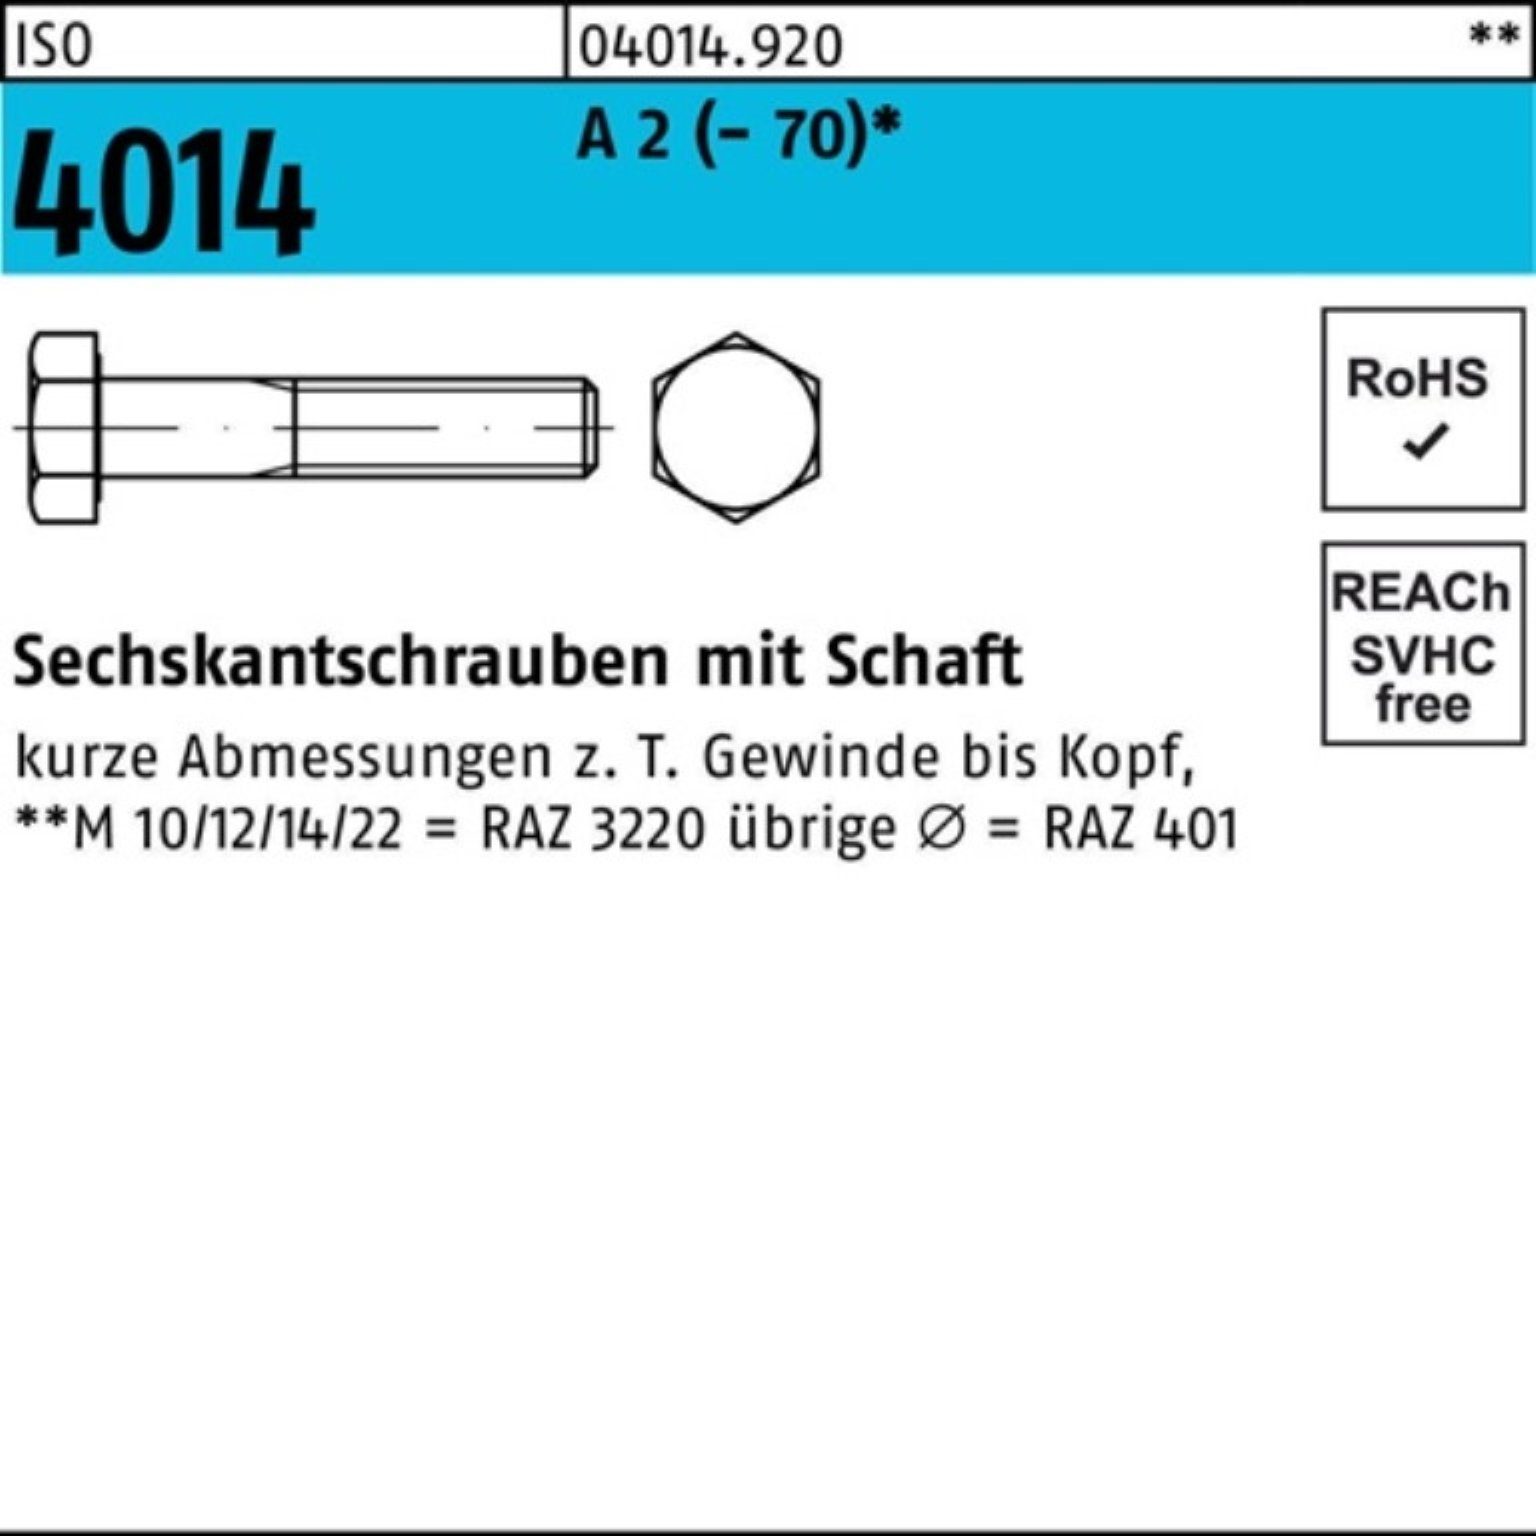 Bufab Sechskantschraube 100er Pack Sechskantschraube ISO 4014 Schaft M10x 50 A 2 (70) 100 St